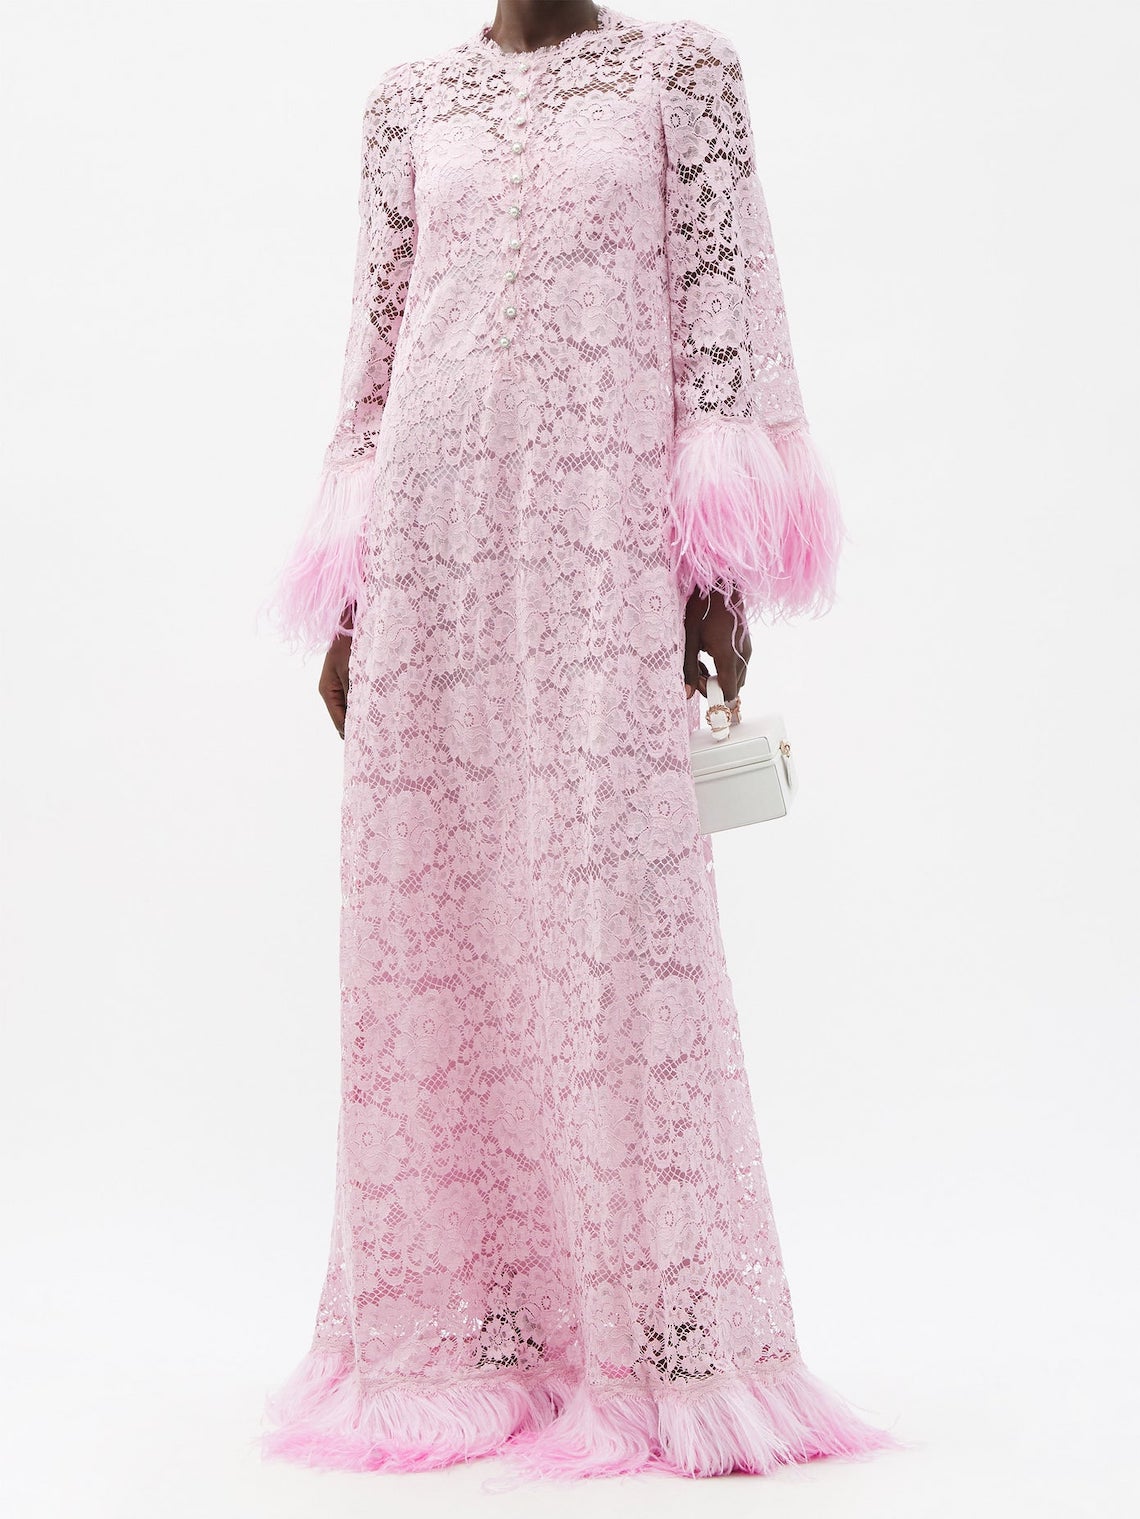 Dolce and Gabbana Feather Trim Pink Wedding Dress Best Pink Wedding Dresses for 2021 2022 Brides Bridal Musings 1 - 30 chiếc áo dài cưới màu hồng dành cho cô dâu yêu thích sắc màu